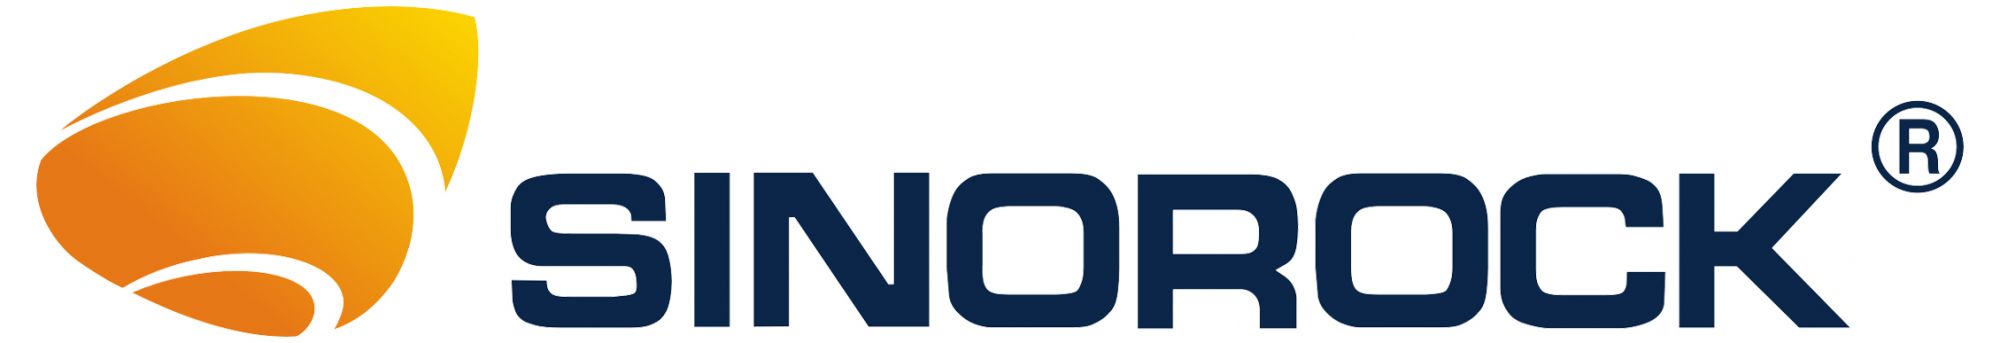 Sinorock Logo